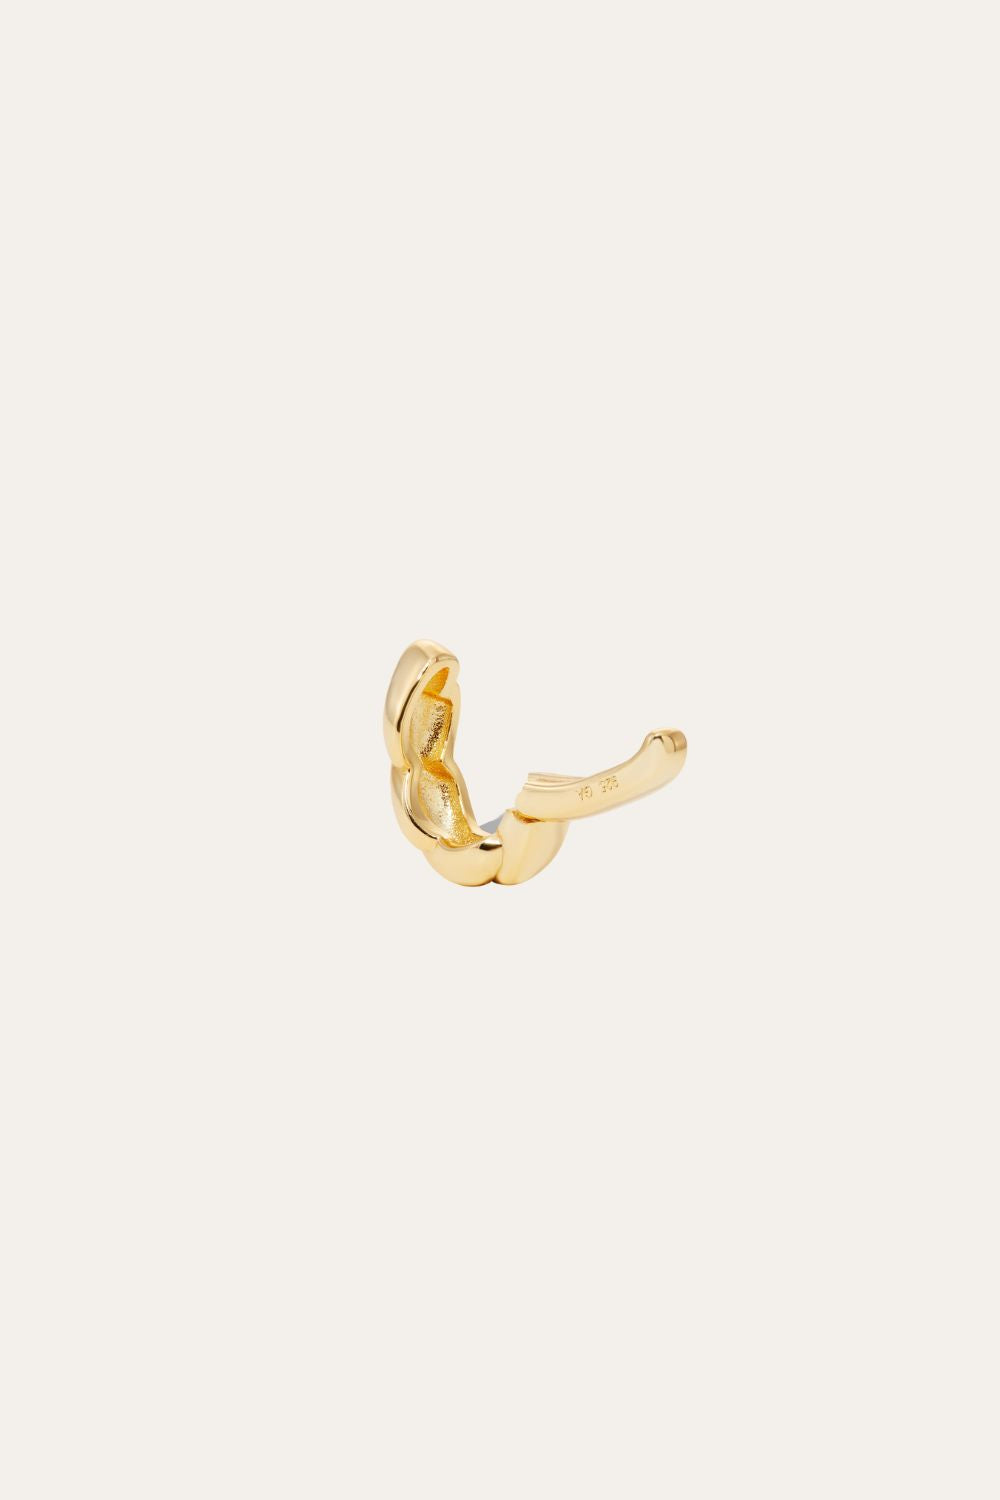 Speira band gold vermeil ear cuff